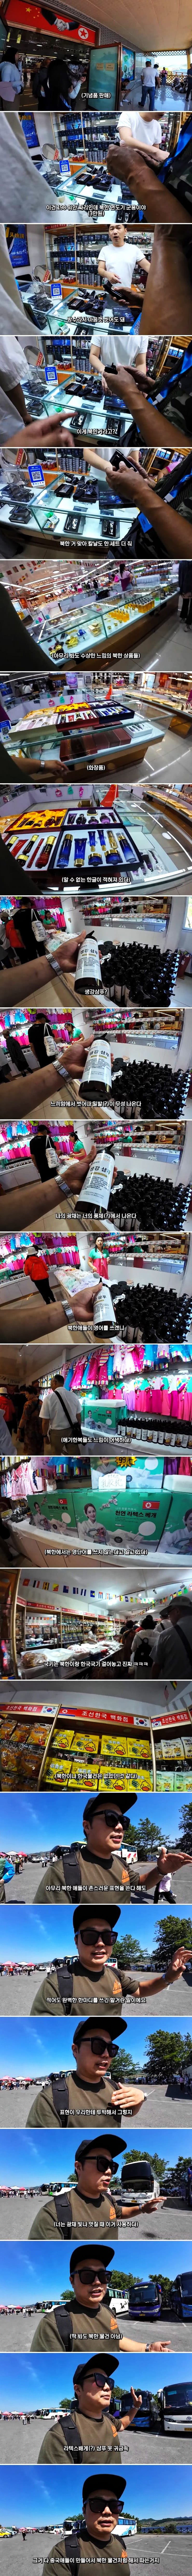 중국에서 판매중인 수상한 북한 제품.jpg